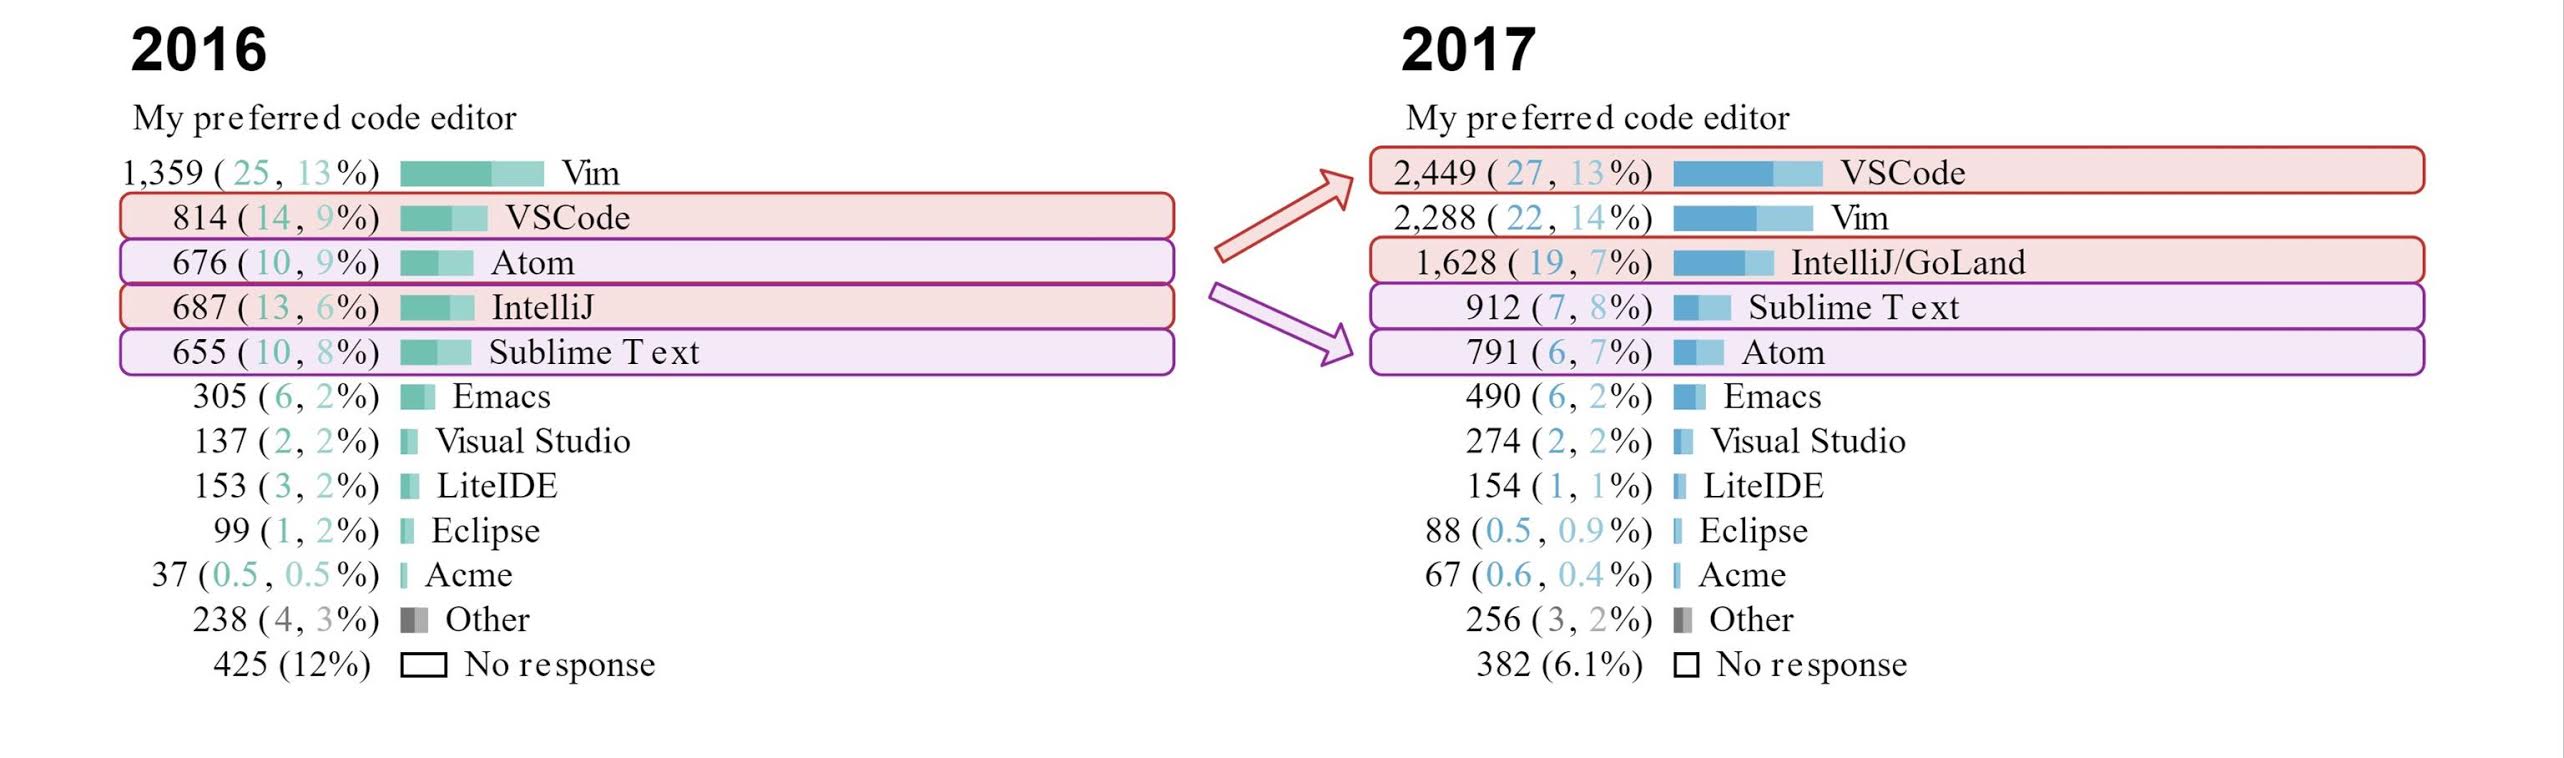 2017 vs 2016 Go Language Survey's question about code editors